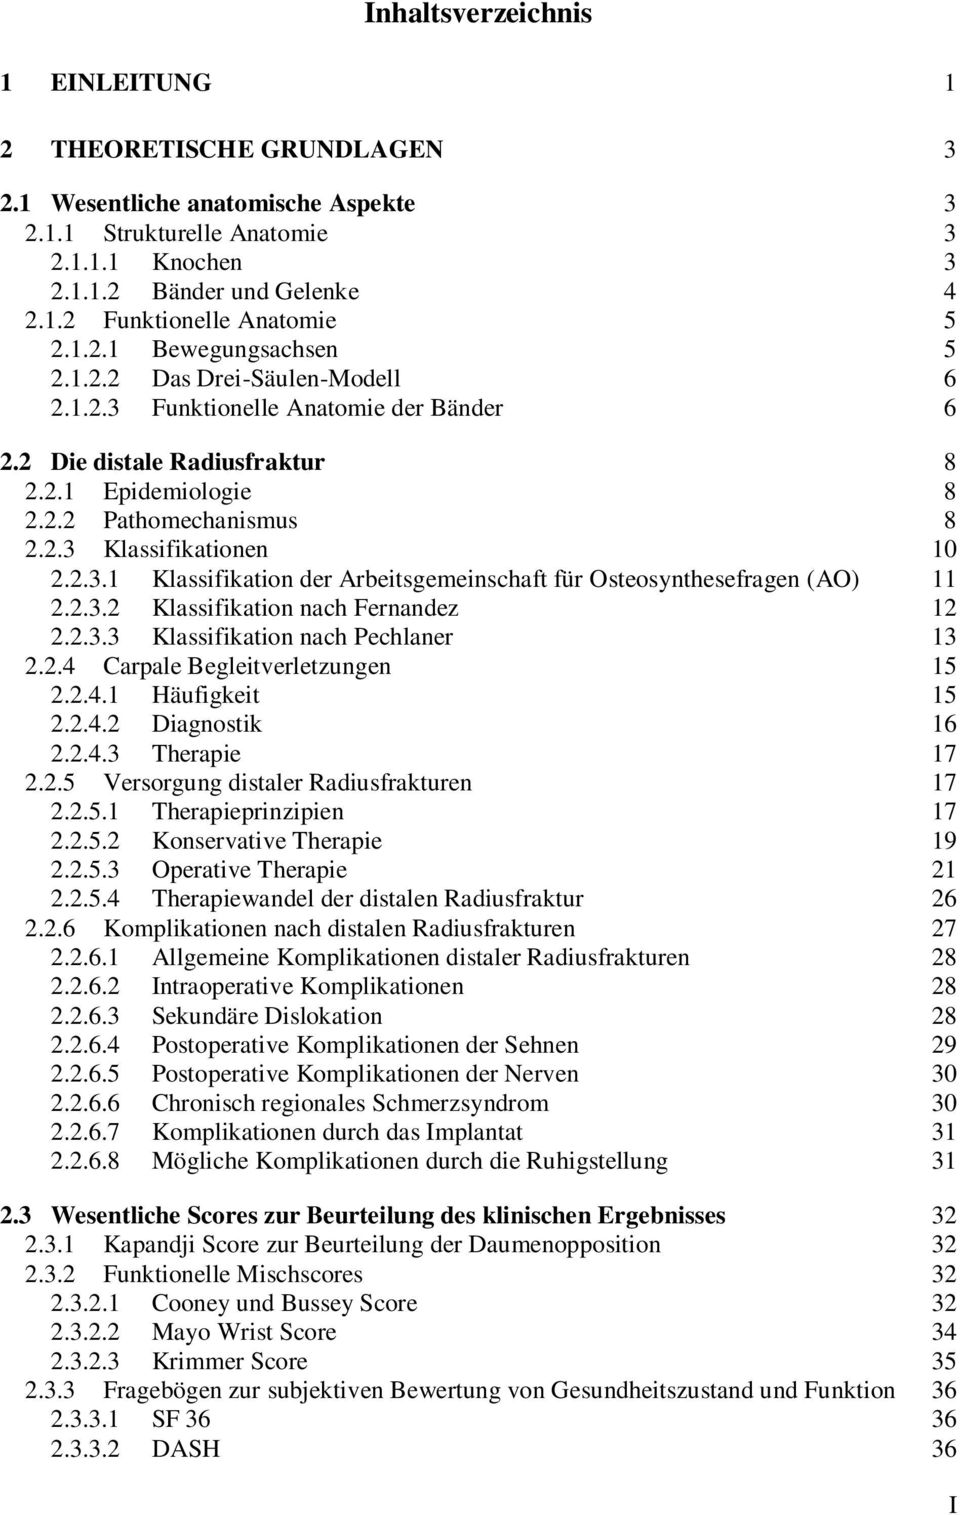 2.3.1 Klassifikation der Arbeitsgemeinschaft für Osteosynthesefragen (AO) 11 2.2.3.2 Klassifikation nach Fernandez 12 2.2.3.3 Klassifikation nach Pechlaner 13 2.2.4 Carpale Begleitverletzungen 15 2.2.4.1 Häufigkeit 15 2.